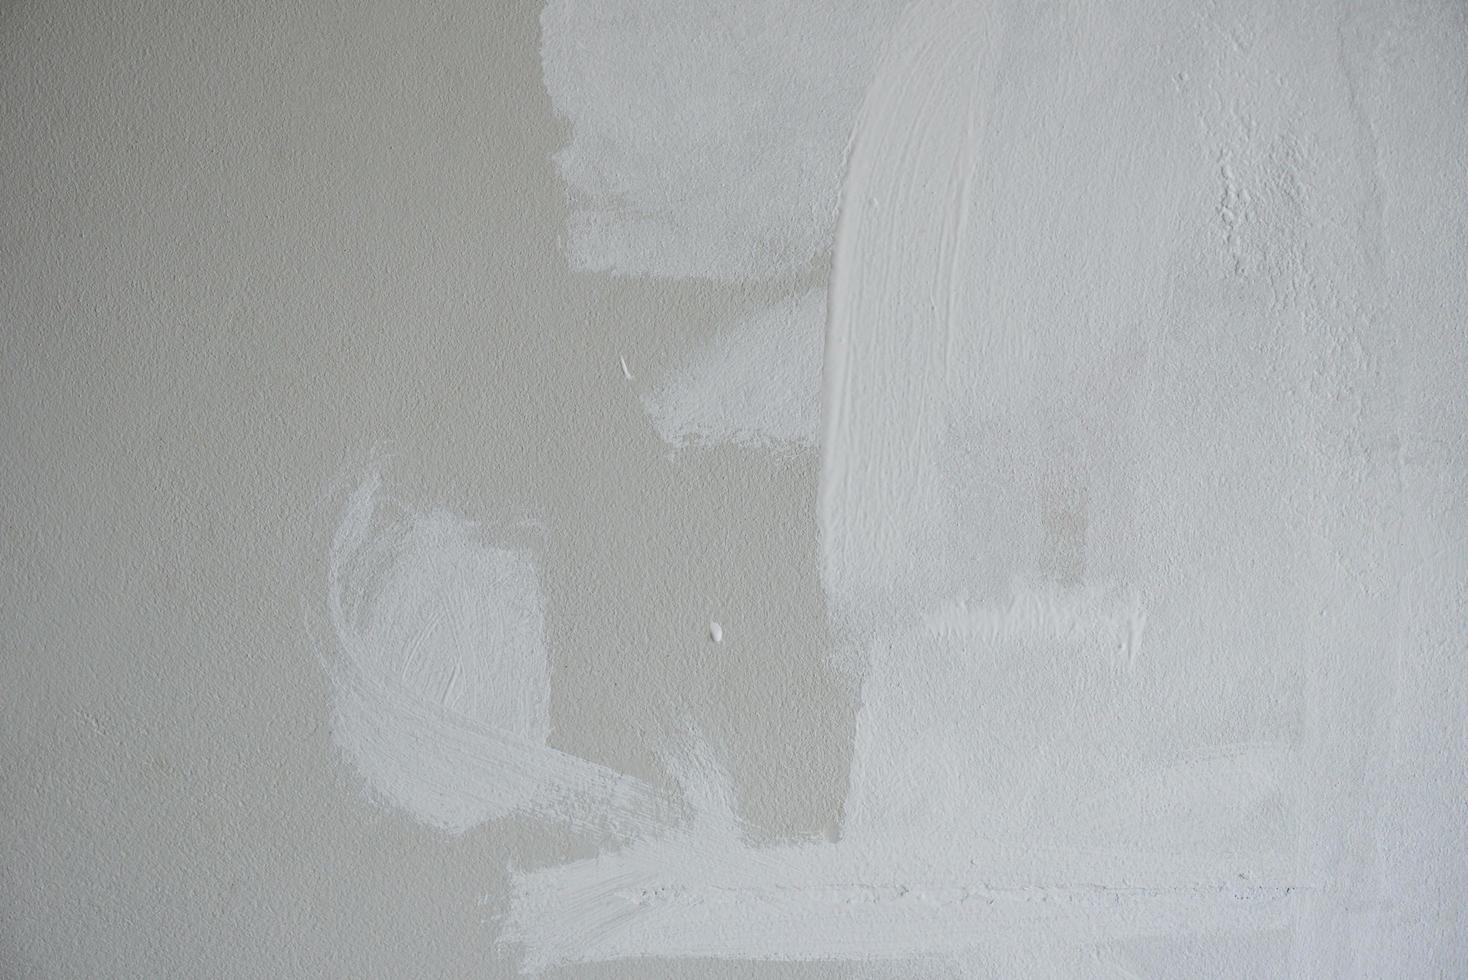 målad vägg bakgrund, målare målning en hus vägg med en måla poller foto